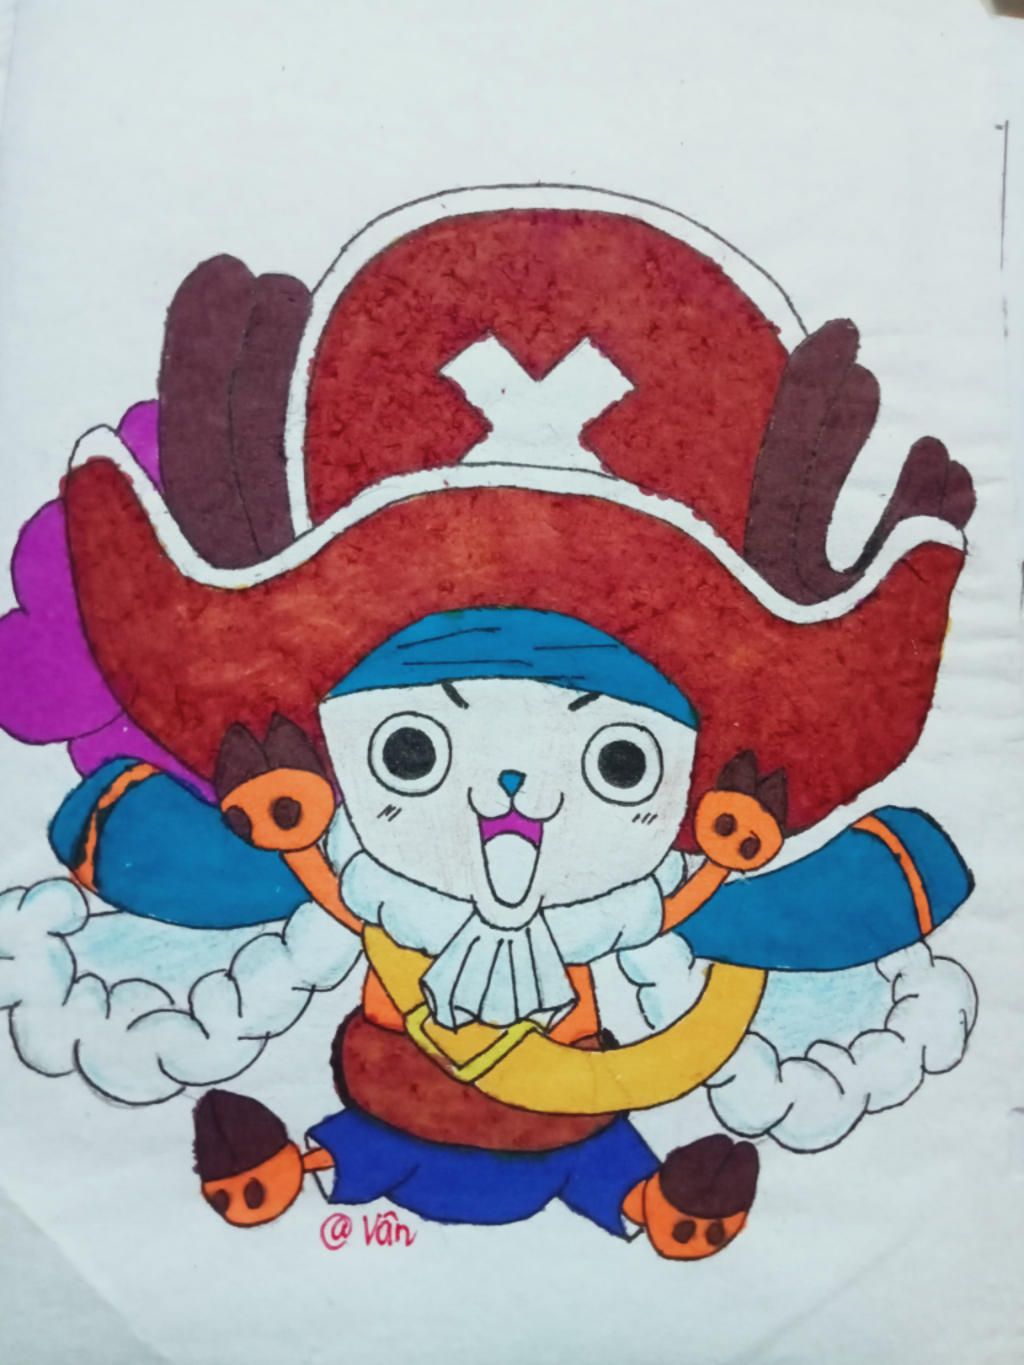 Ảnh One Piece Chibi - Xem ngay hình minh hoạ nhân vật One Piece ngộ nghĩnh!